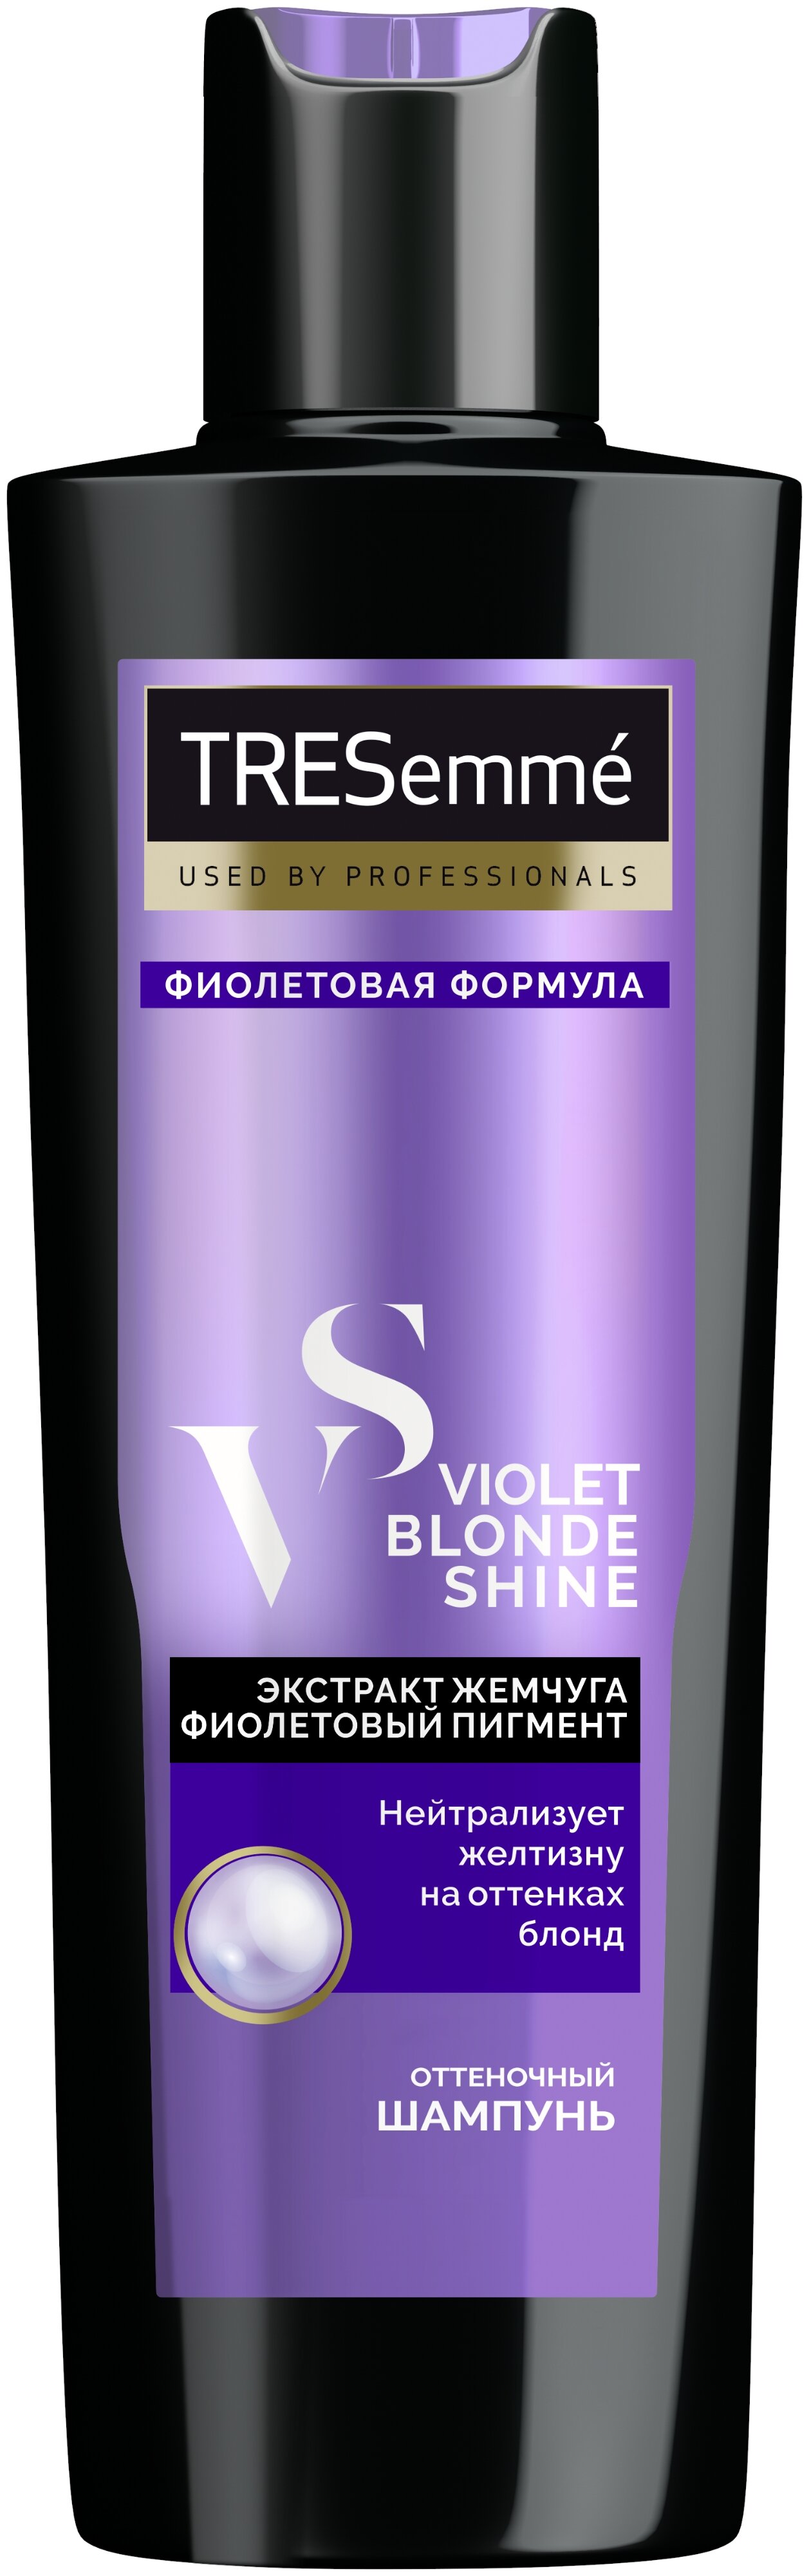 TRESemme Violet Blond Shine "Фиолетовая формула" - содержит кератин, глицерин